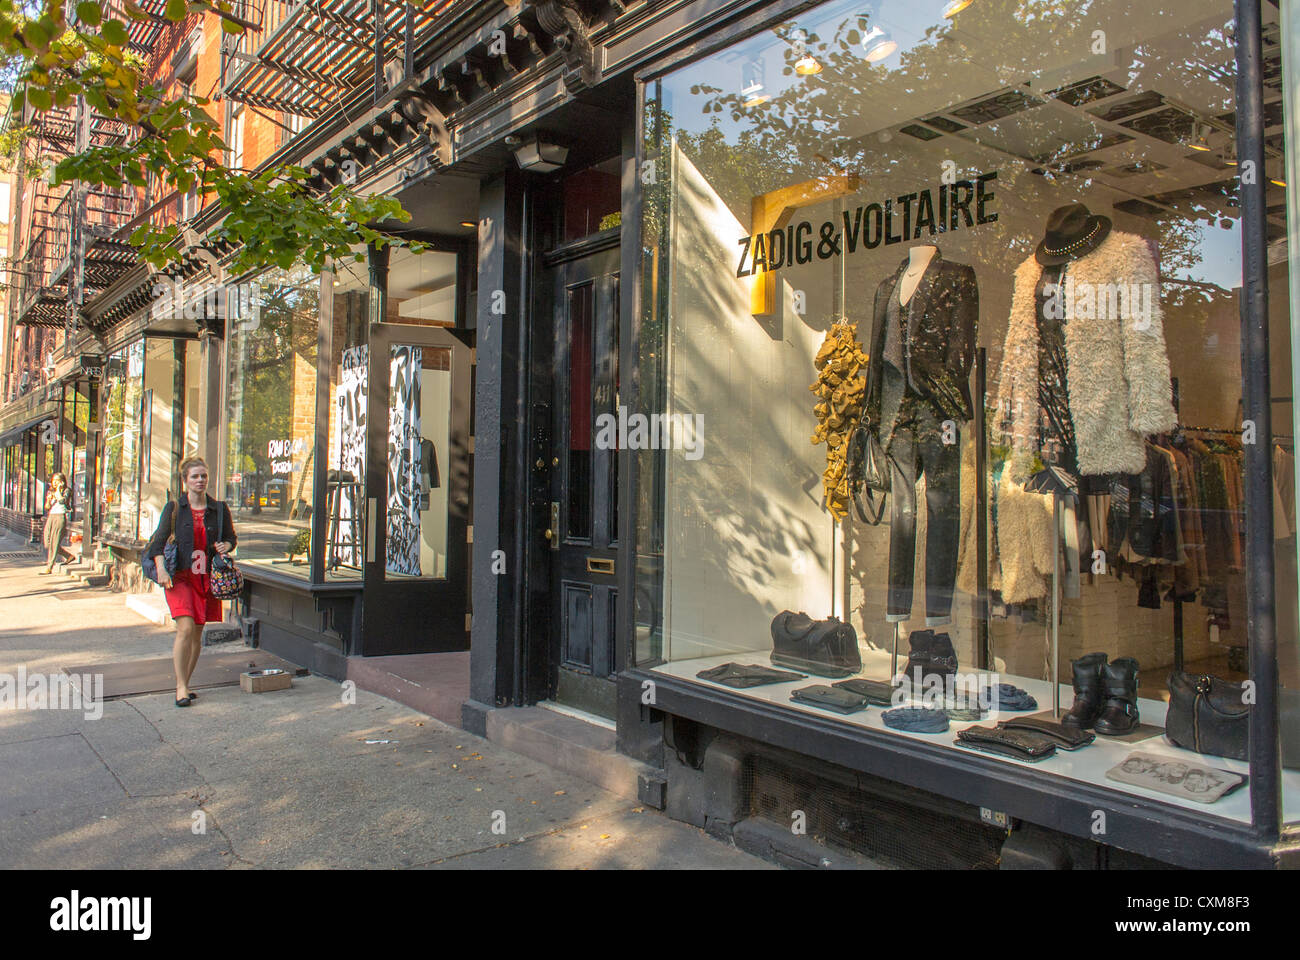 Ciudad de Nueva York, NY, EE.UU., escenas de calles, mujer de compras,  Tiendas de lujo de ropa francesa, 'Zadig & Voltaire', en Greenwich Village,  Bleecker Street, Manhattan Neighborhood Shop front window, RICH